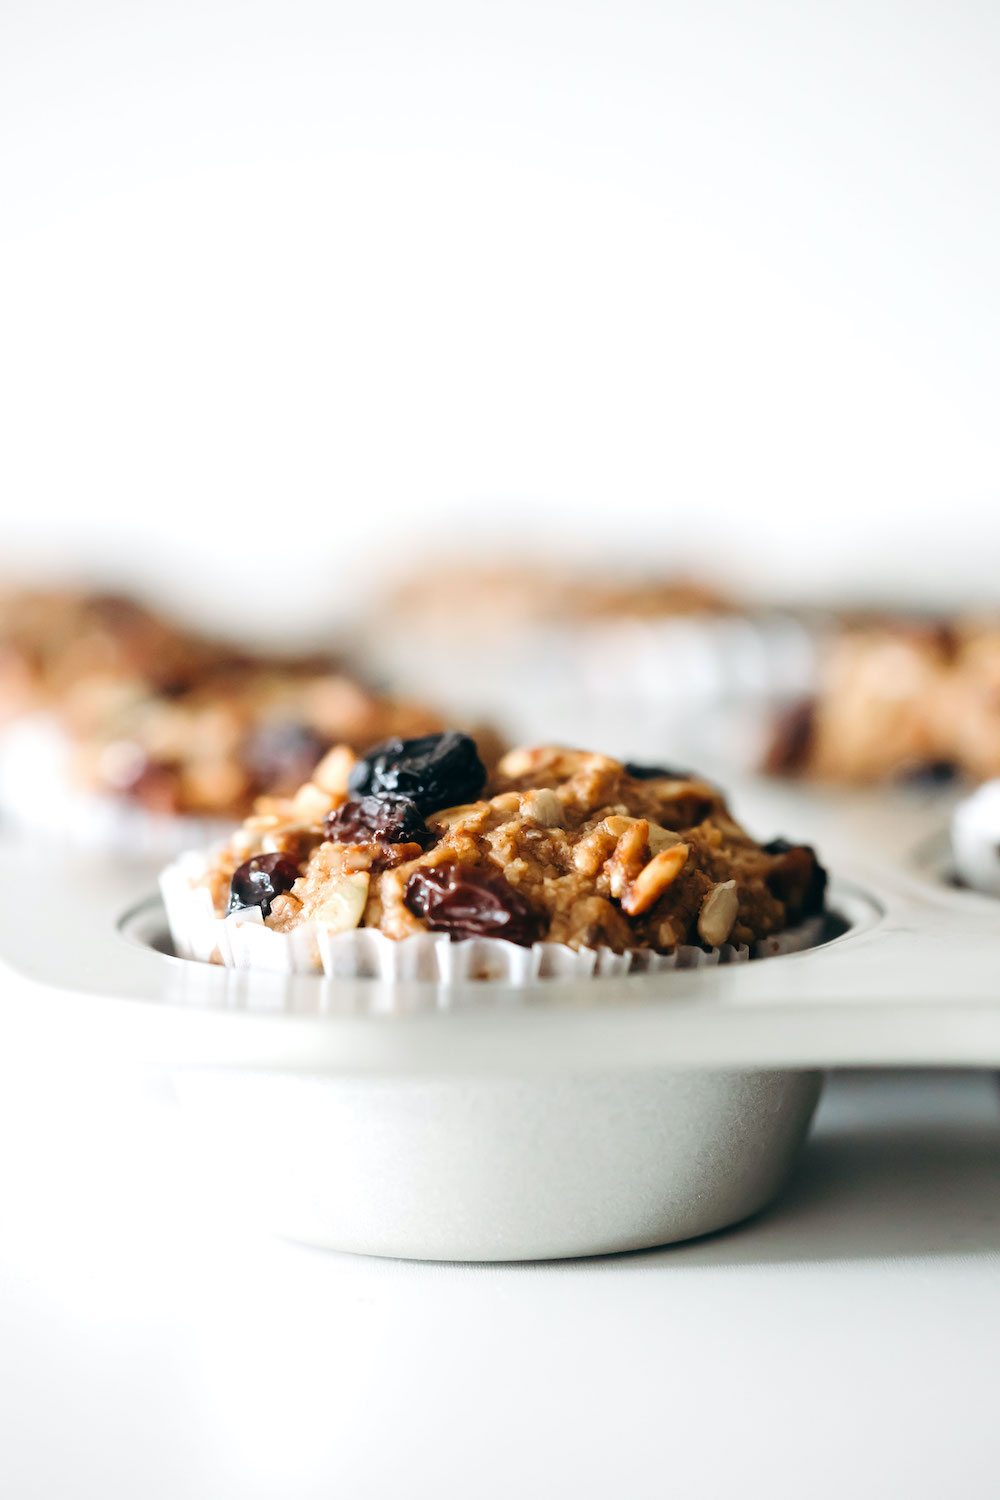 Blender Breakfast Muffins (vegan + gluten-free)